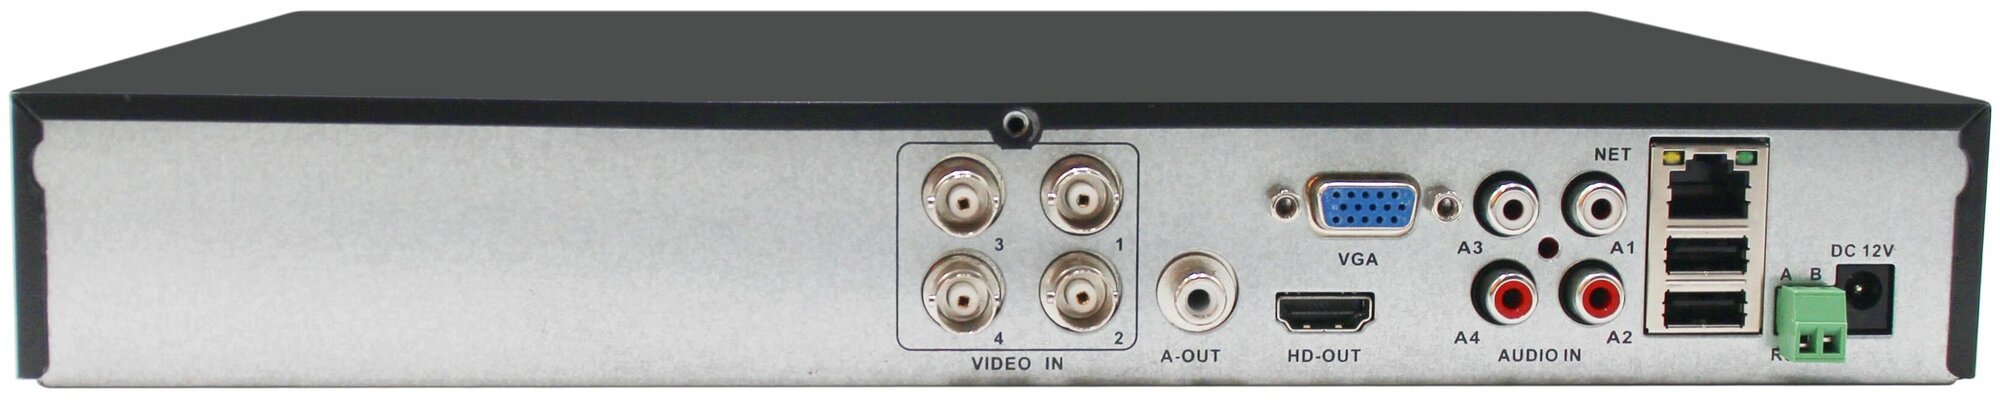 AltCam DVR483 4-х канальный гибридный 8Mp XVR регистратор 5 в 1 (AHD+TVI+CVI+IP+CVBS)